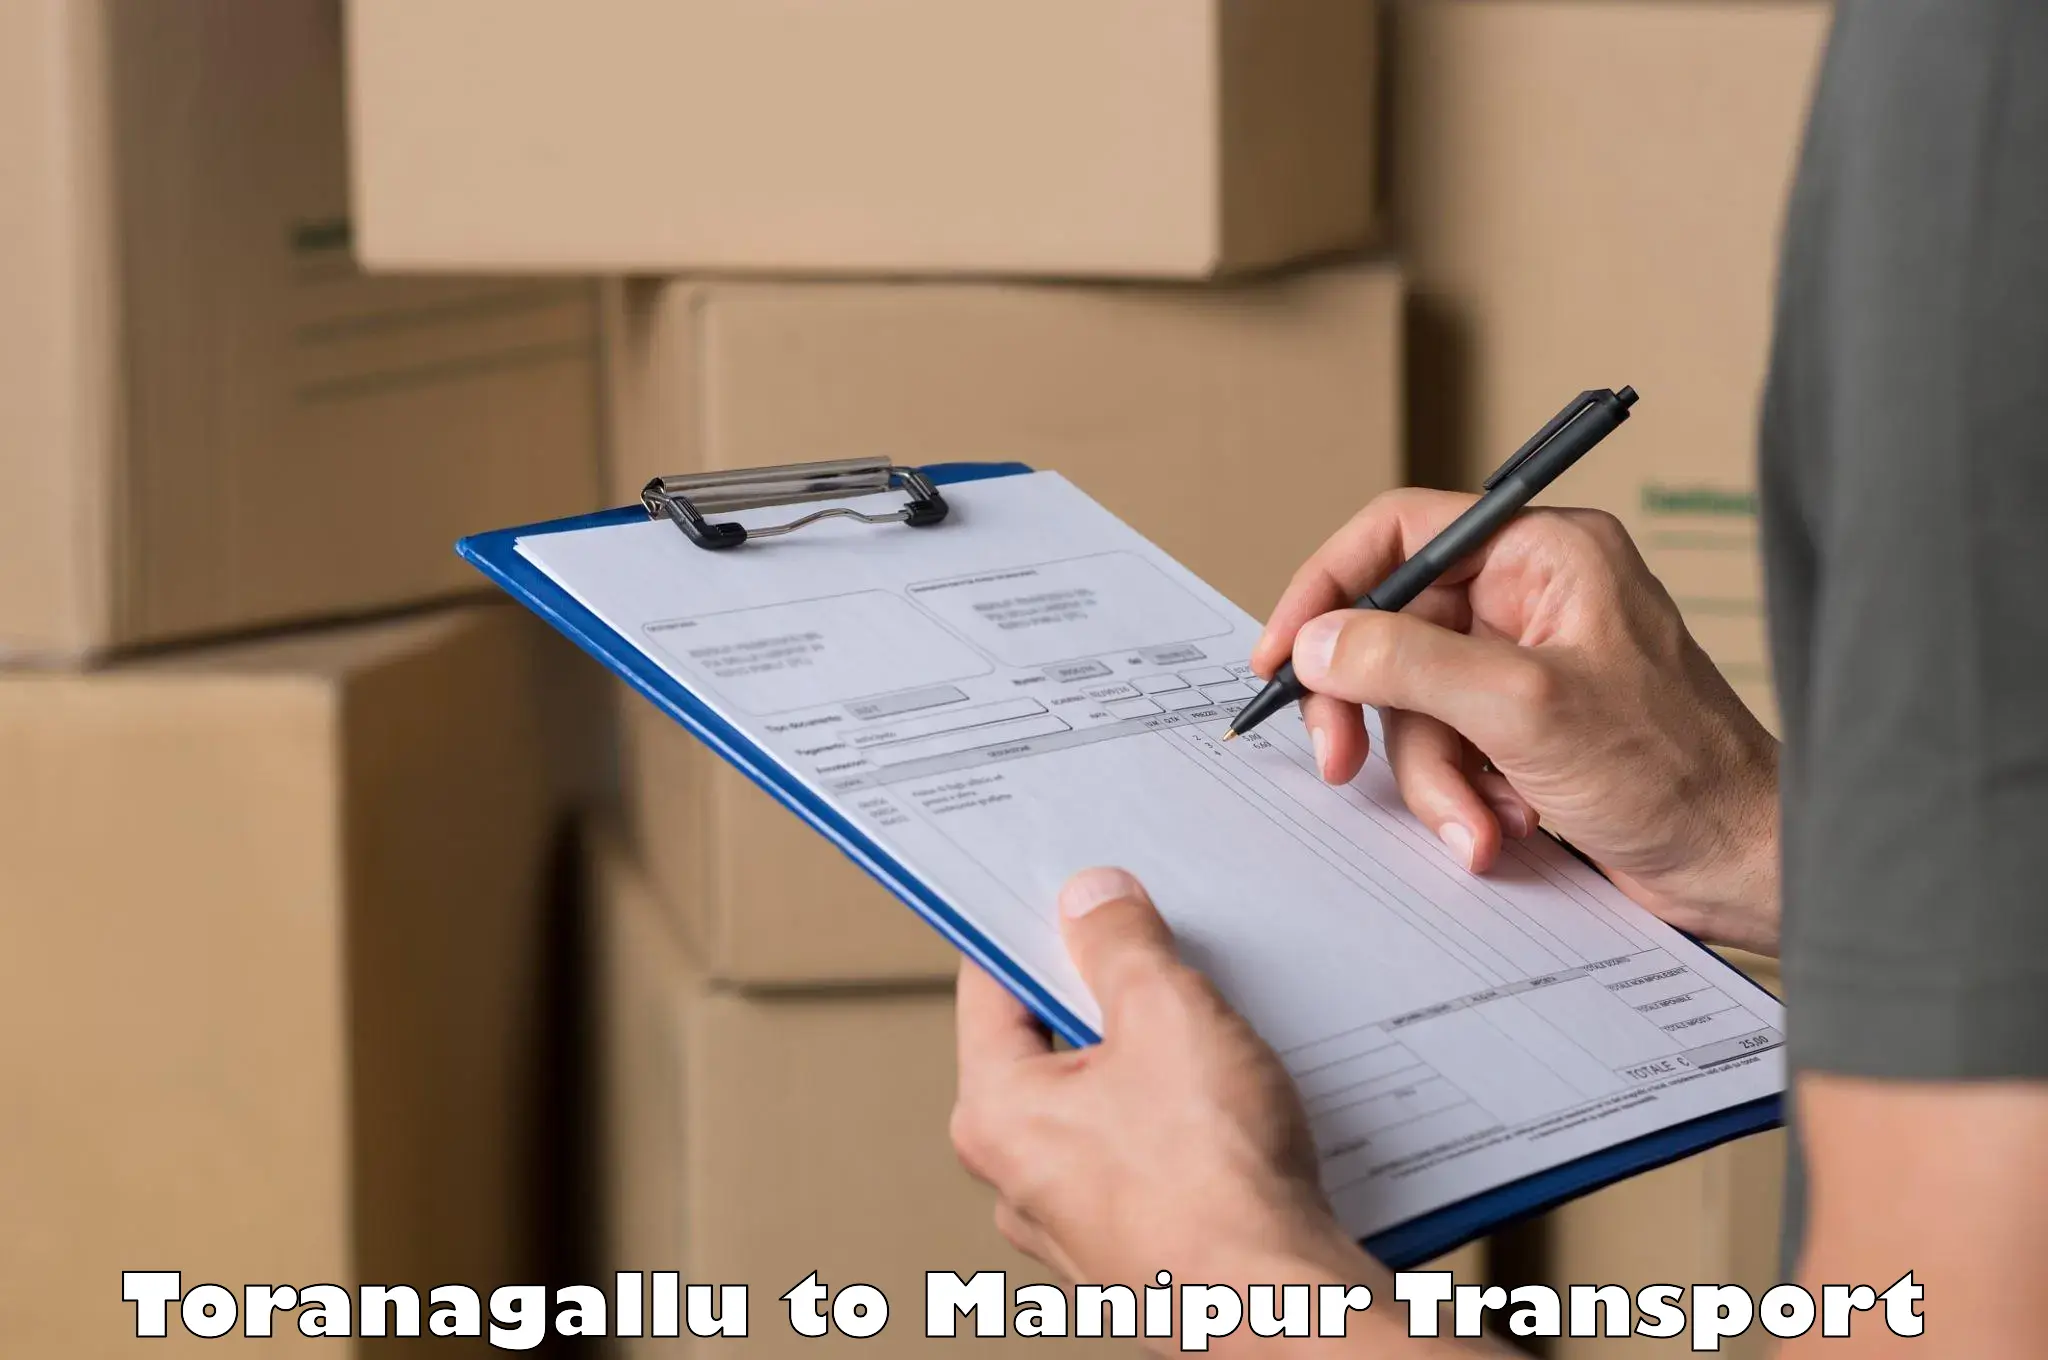 Transportation solution services Toranagallu to Manipur